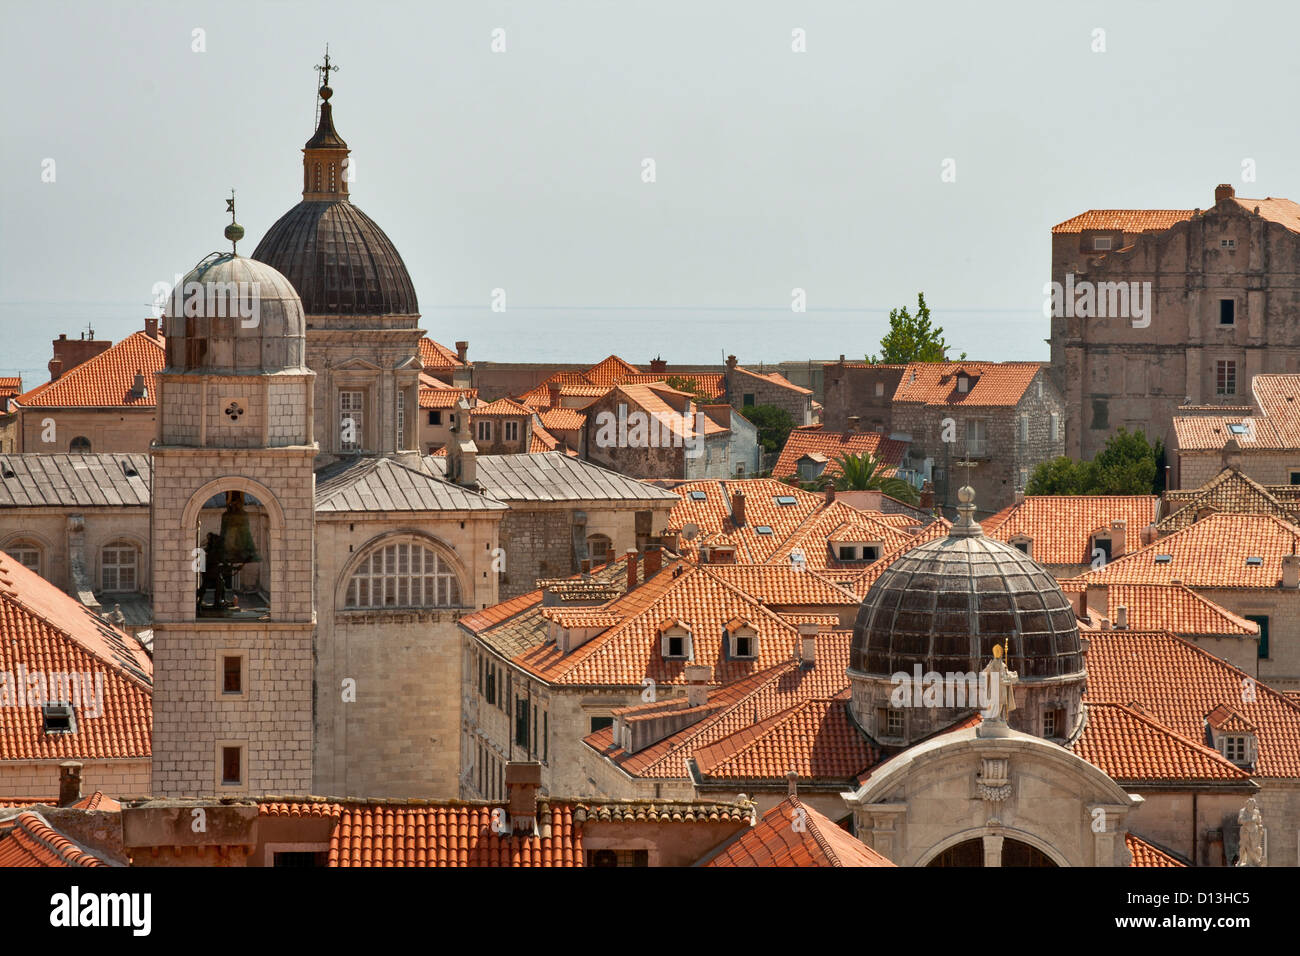 Dubrovnik vue depuis les remparts de la ville, la Croatie Banque D'Images